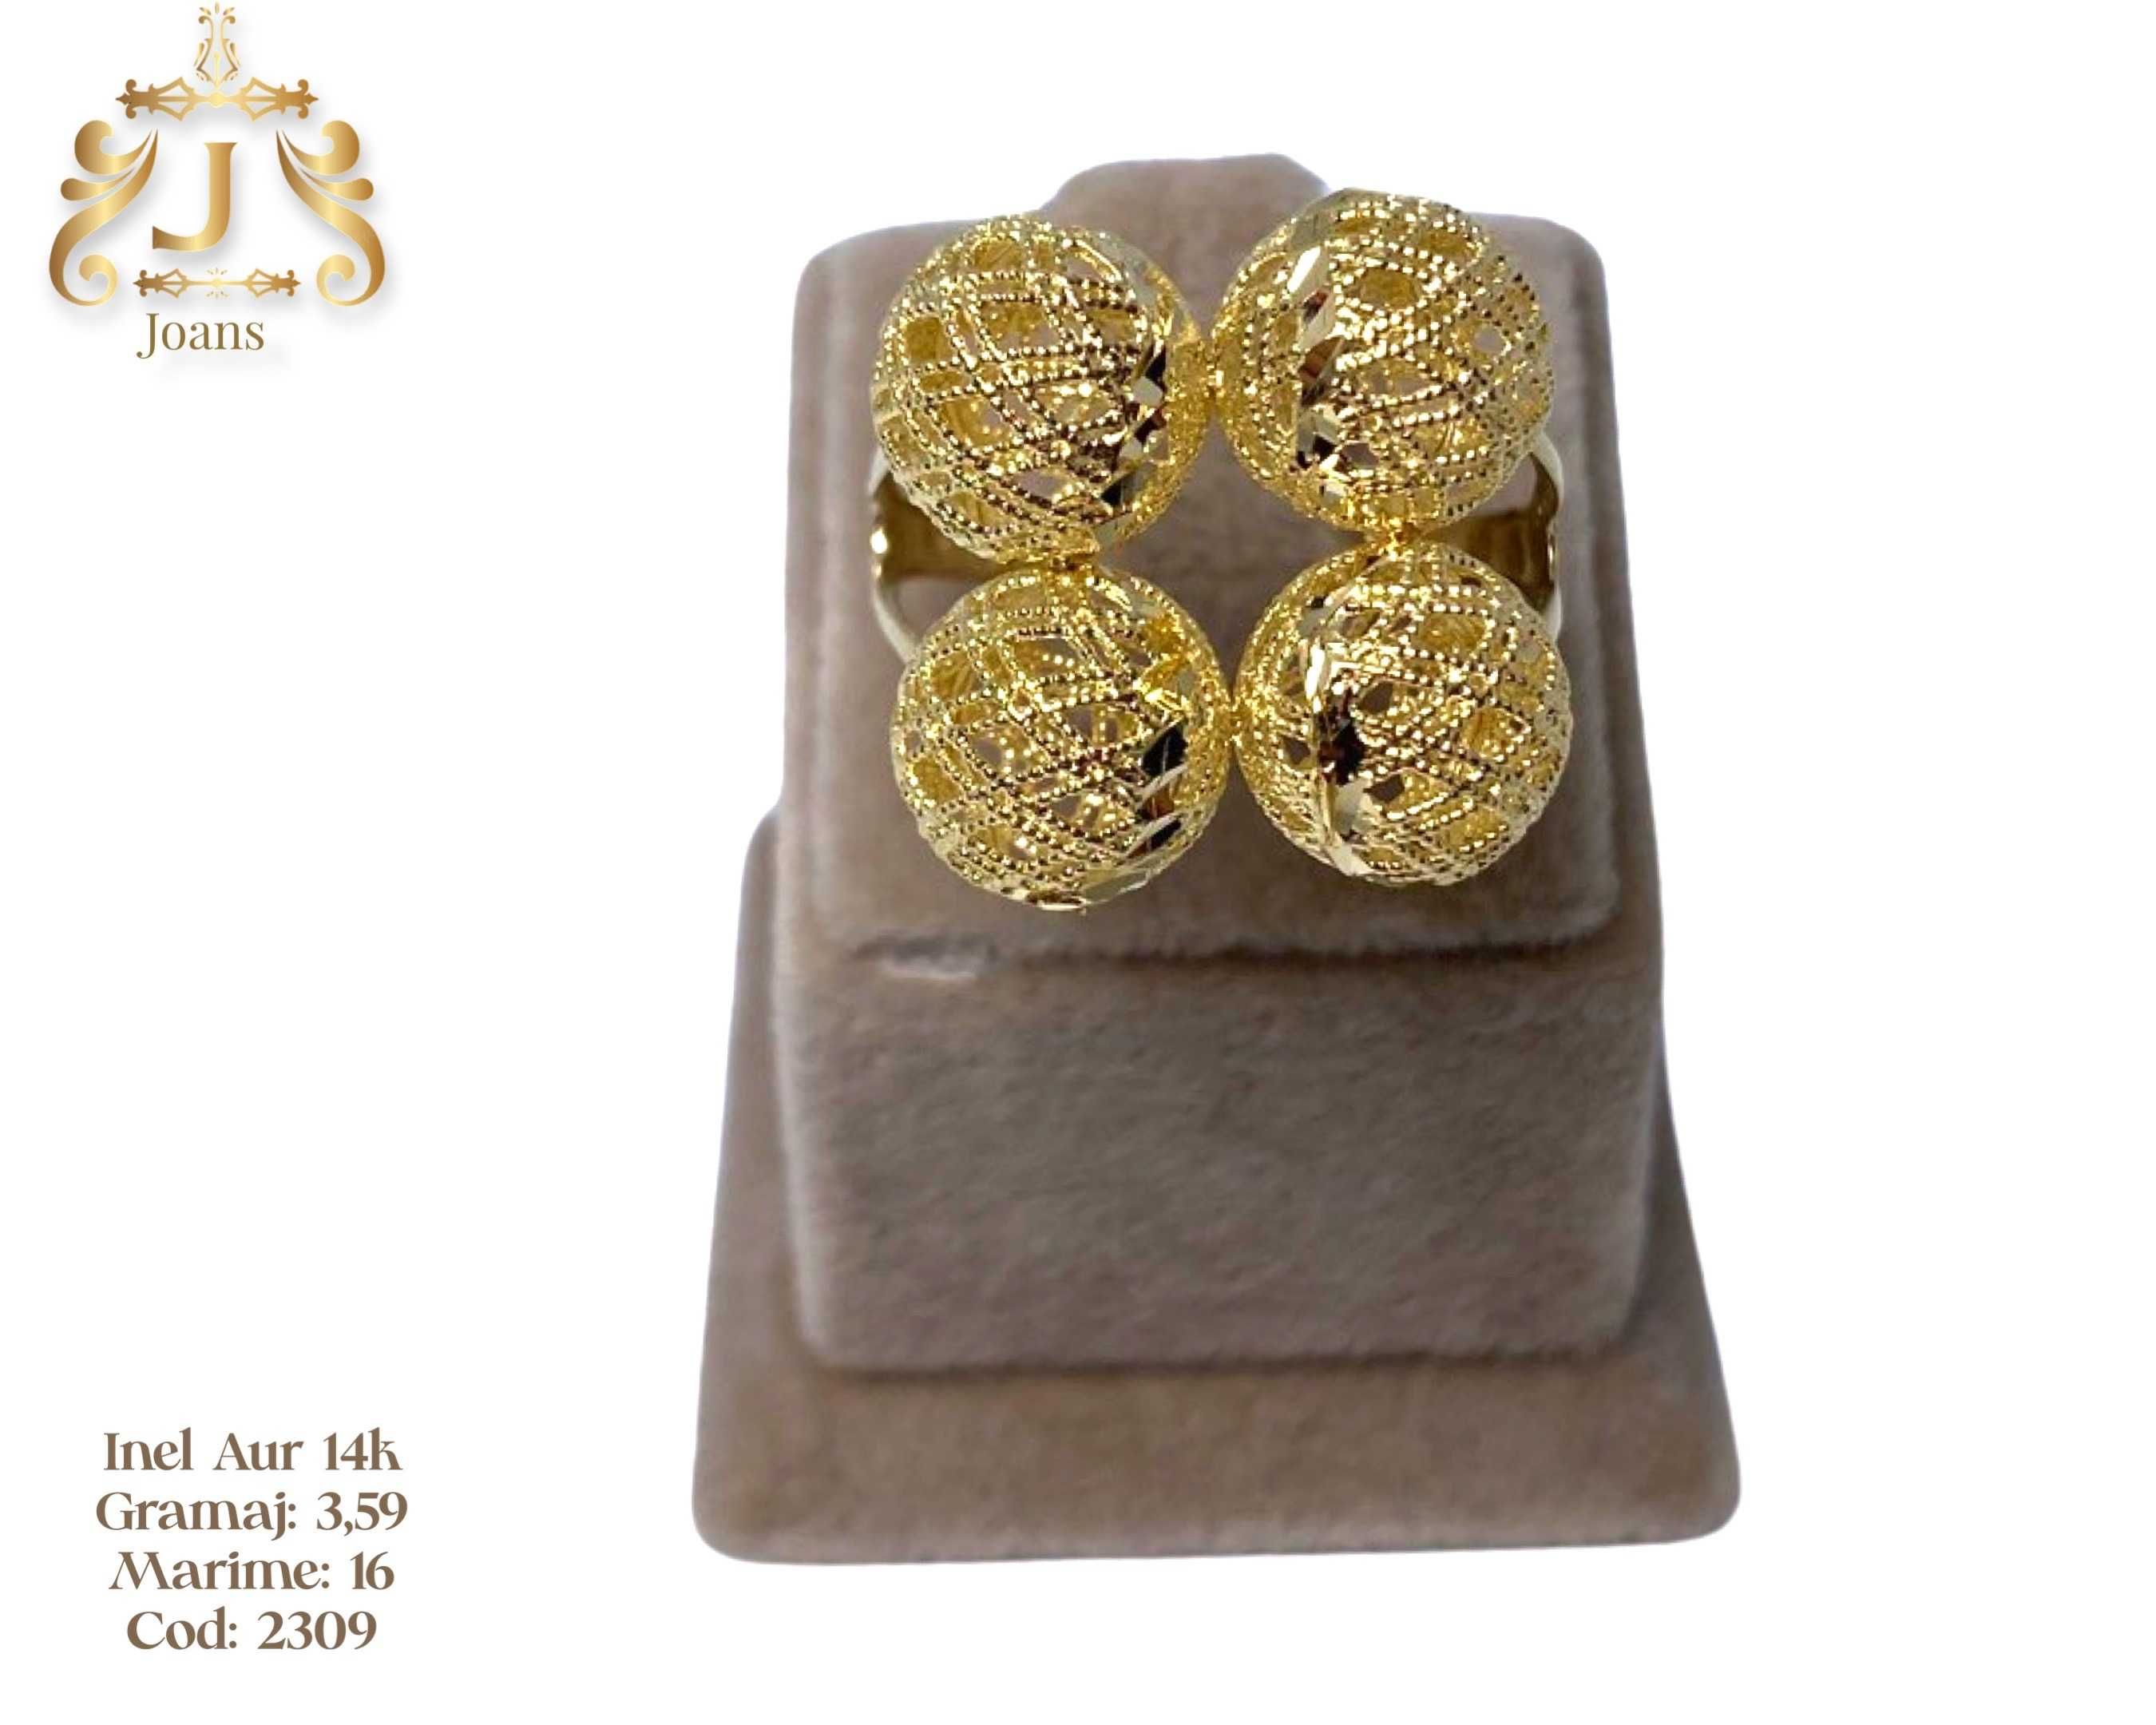 (2308) Inel Aur 14k 3,84 grame FB Bijoux Euro Gold 320 lei gr